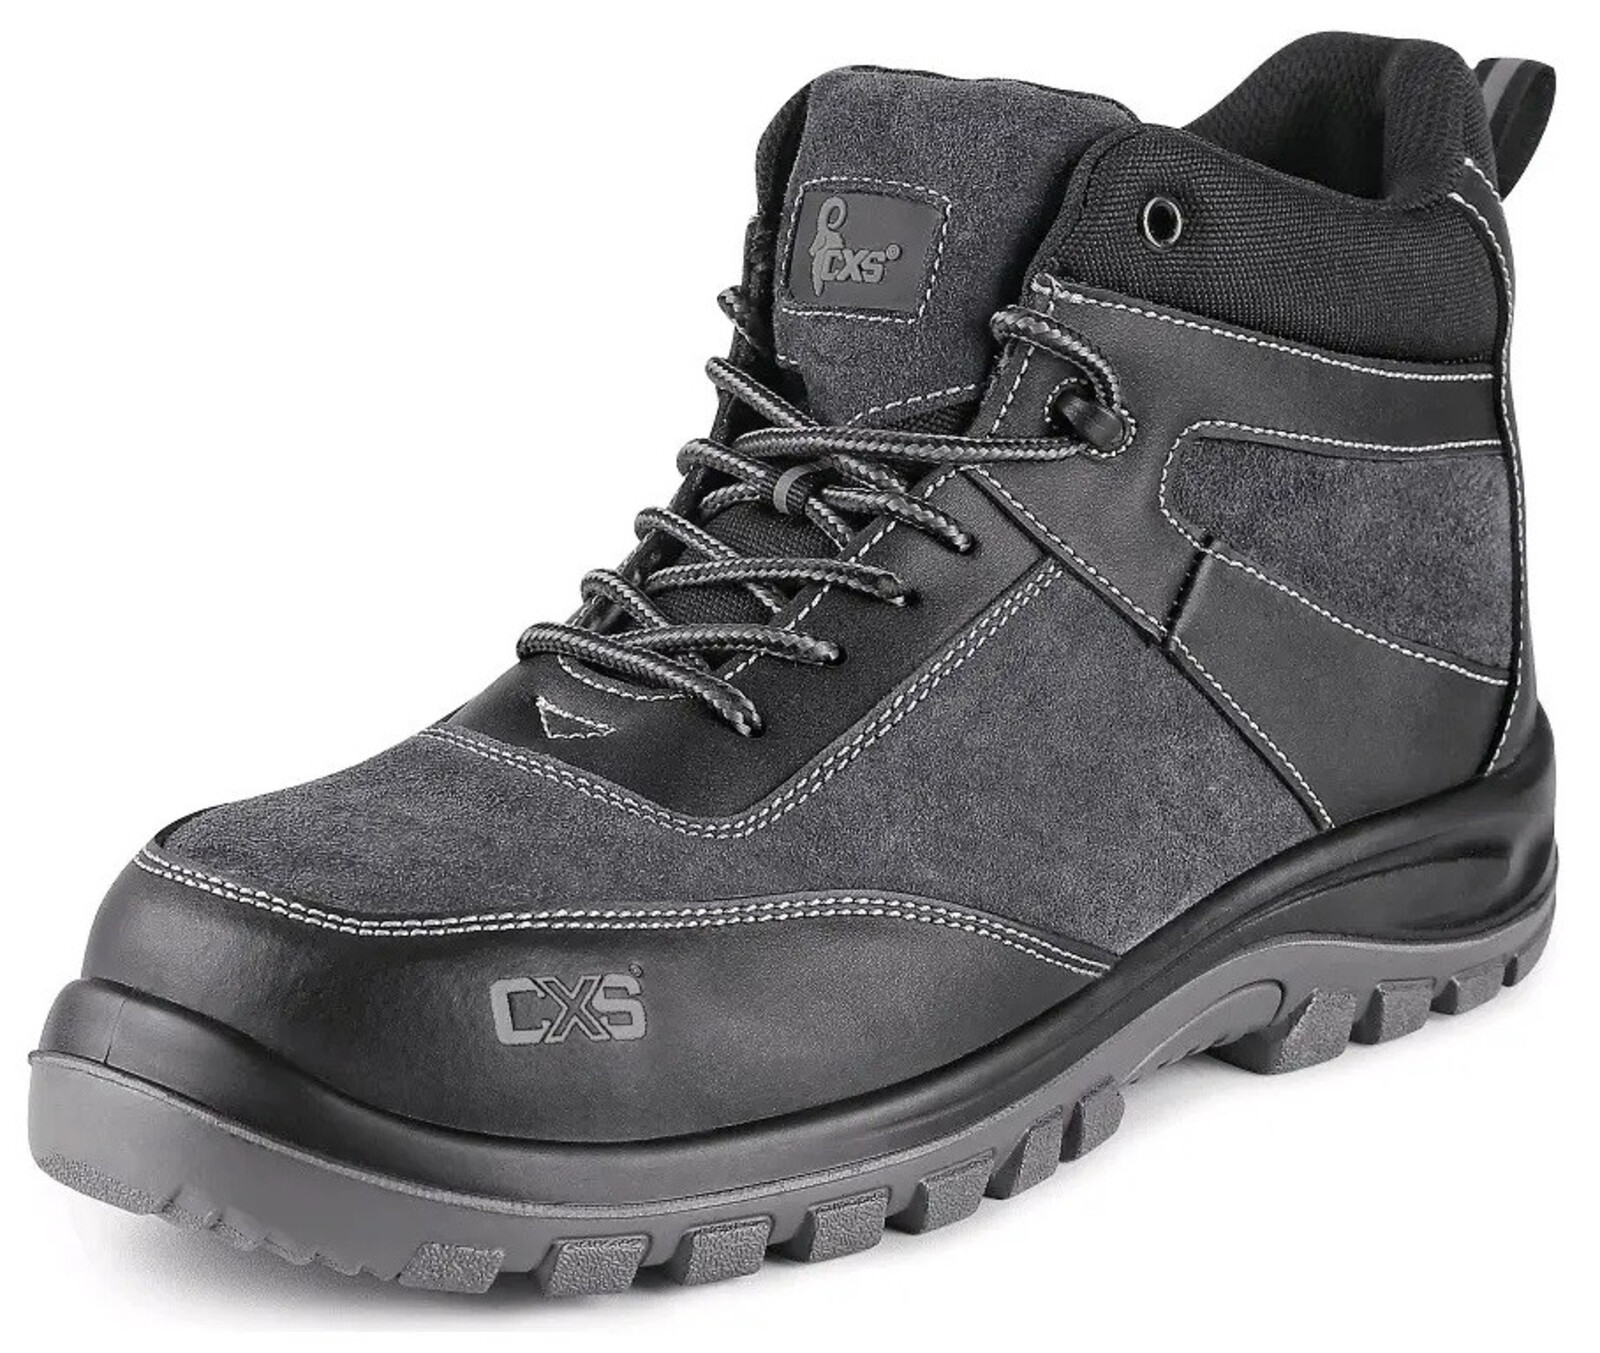 Bezpečnostná členková obuv CXS Profit Top S1P SRC - veľkosť: 48, farba: čierna/sivá